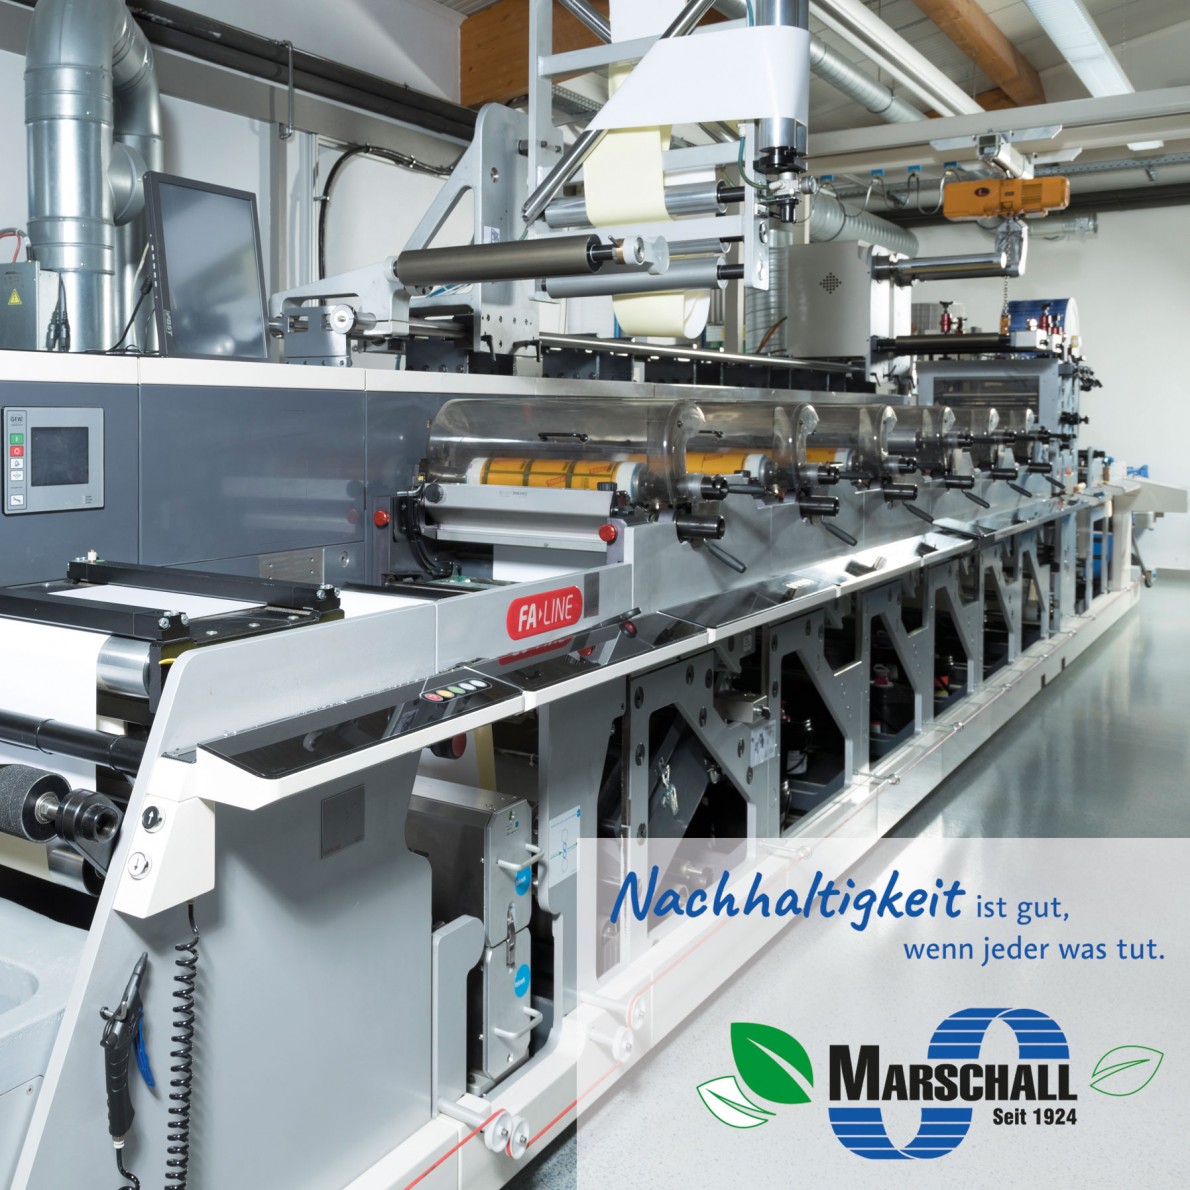 Etikettenproduktion mit einer 6-farbigen Flexdruckmaschine. ein Hinweis auf nachhaltige Etiketten.